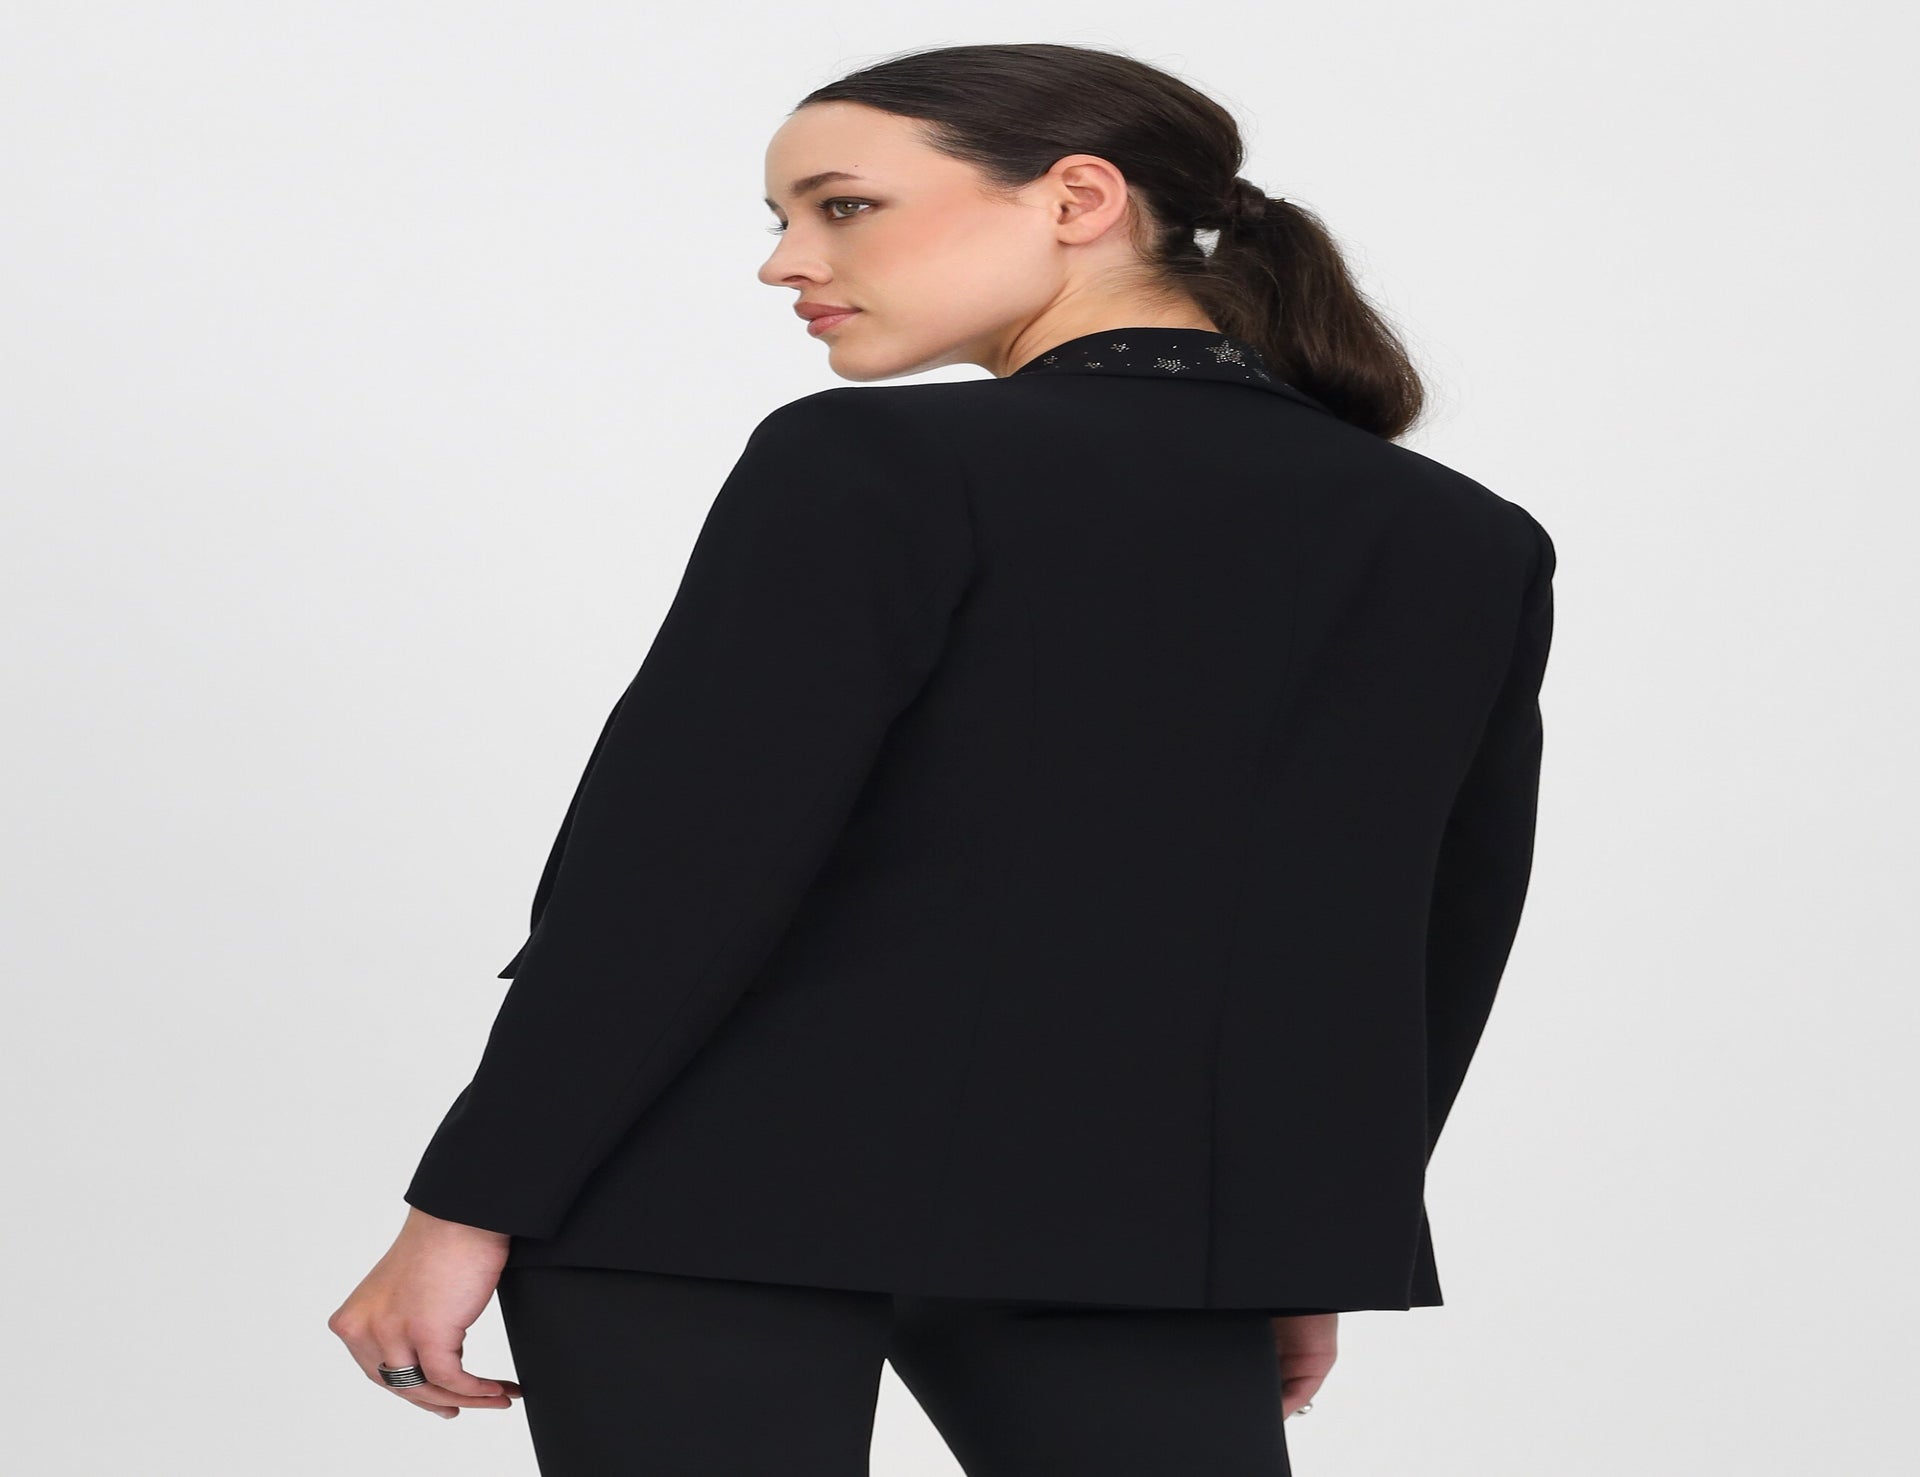 Black Embellished Blazer - Black - Jackets - Short - Women's Clothing ...